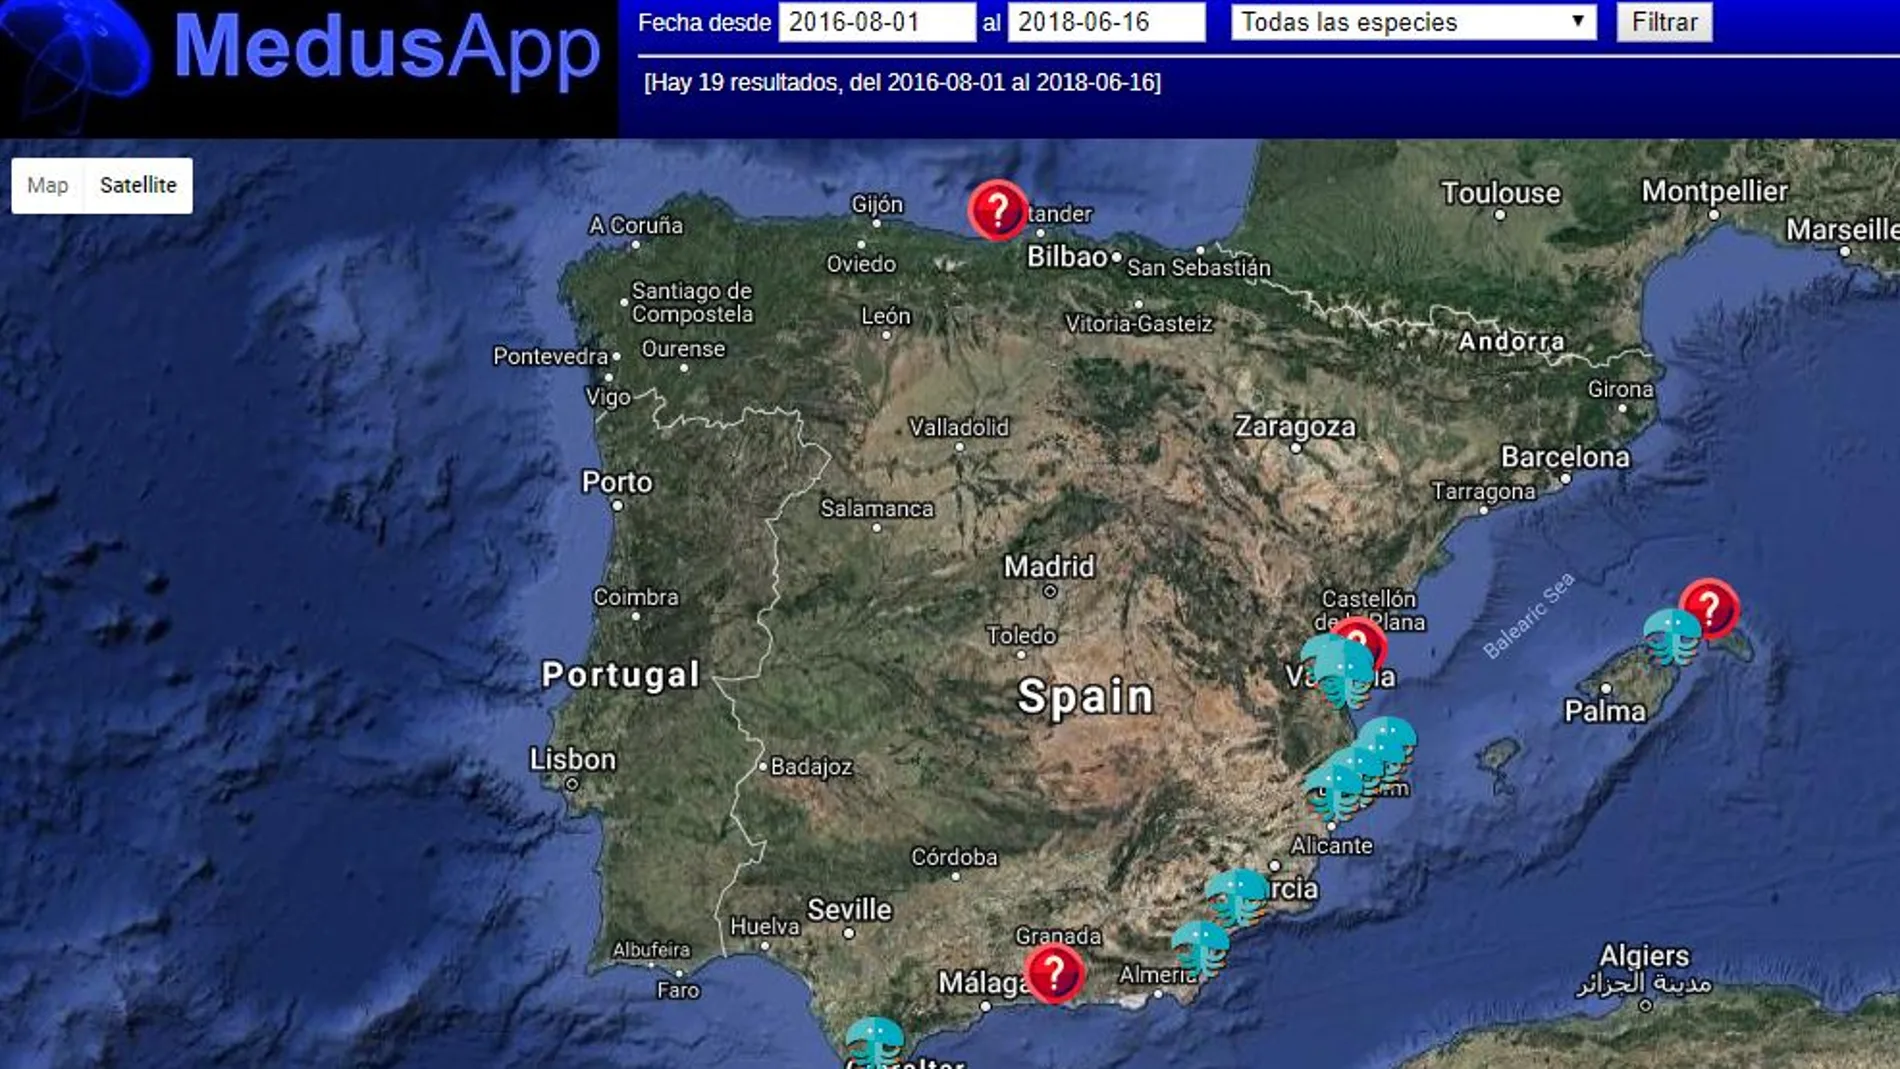 La app incluye un mapa para ir consignando dónde hay medusas